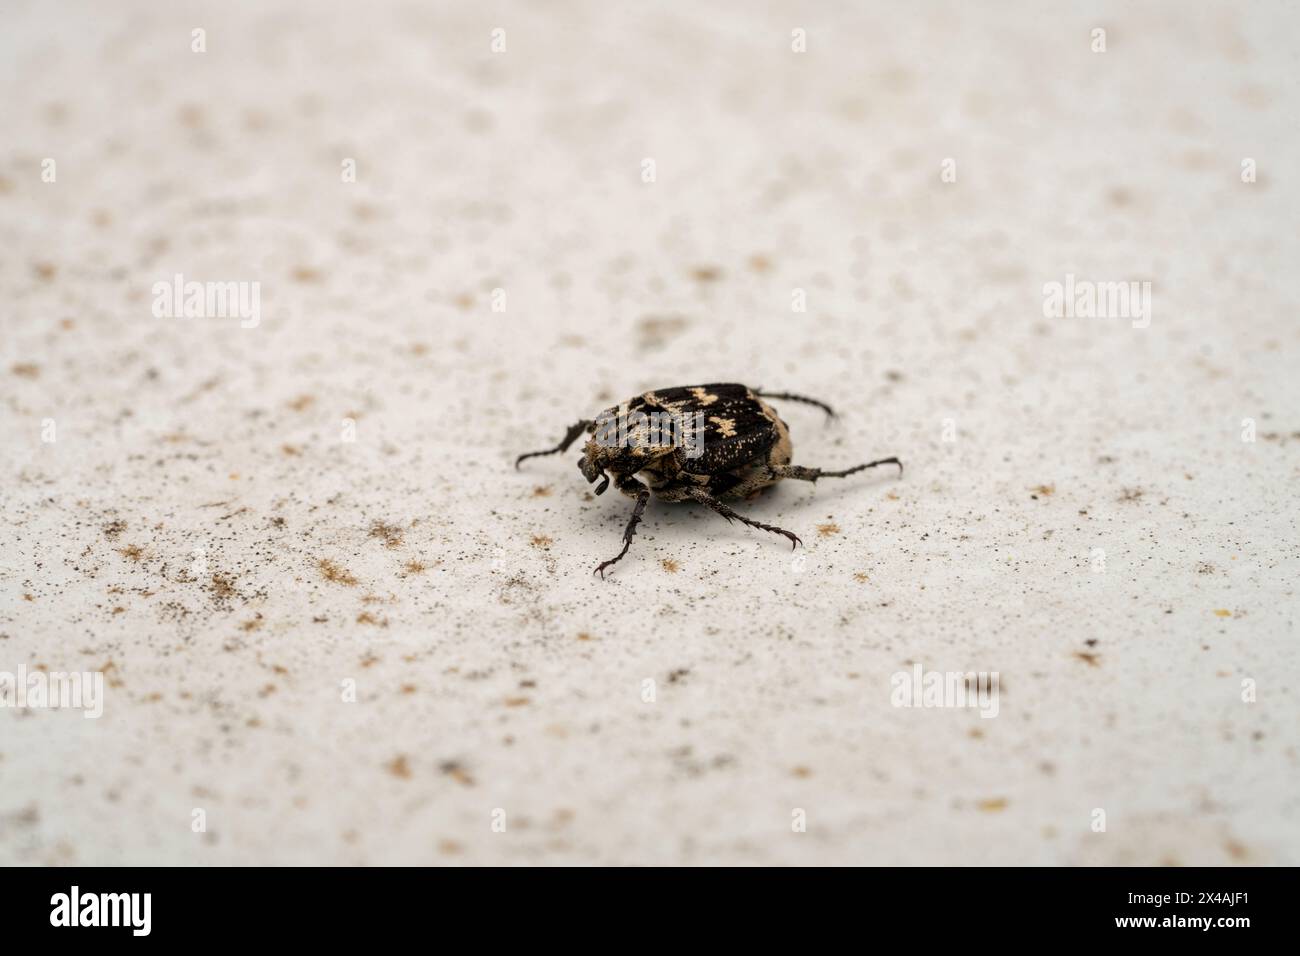 Valgus hemipterus famiglia Scarabaeidae genere Valgus scarabeo scarabeo natura selvaggia fotografia di insetti, foto, sfondo Foto Stock